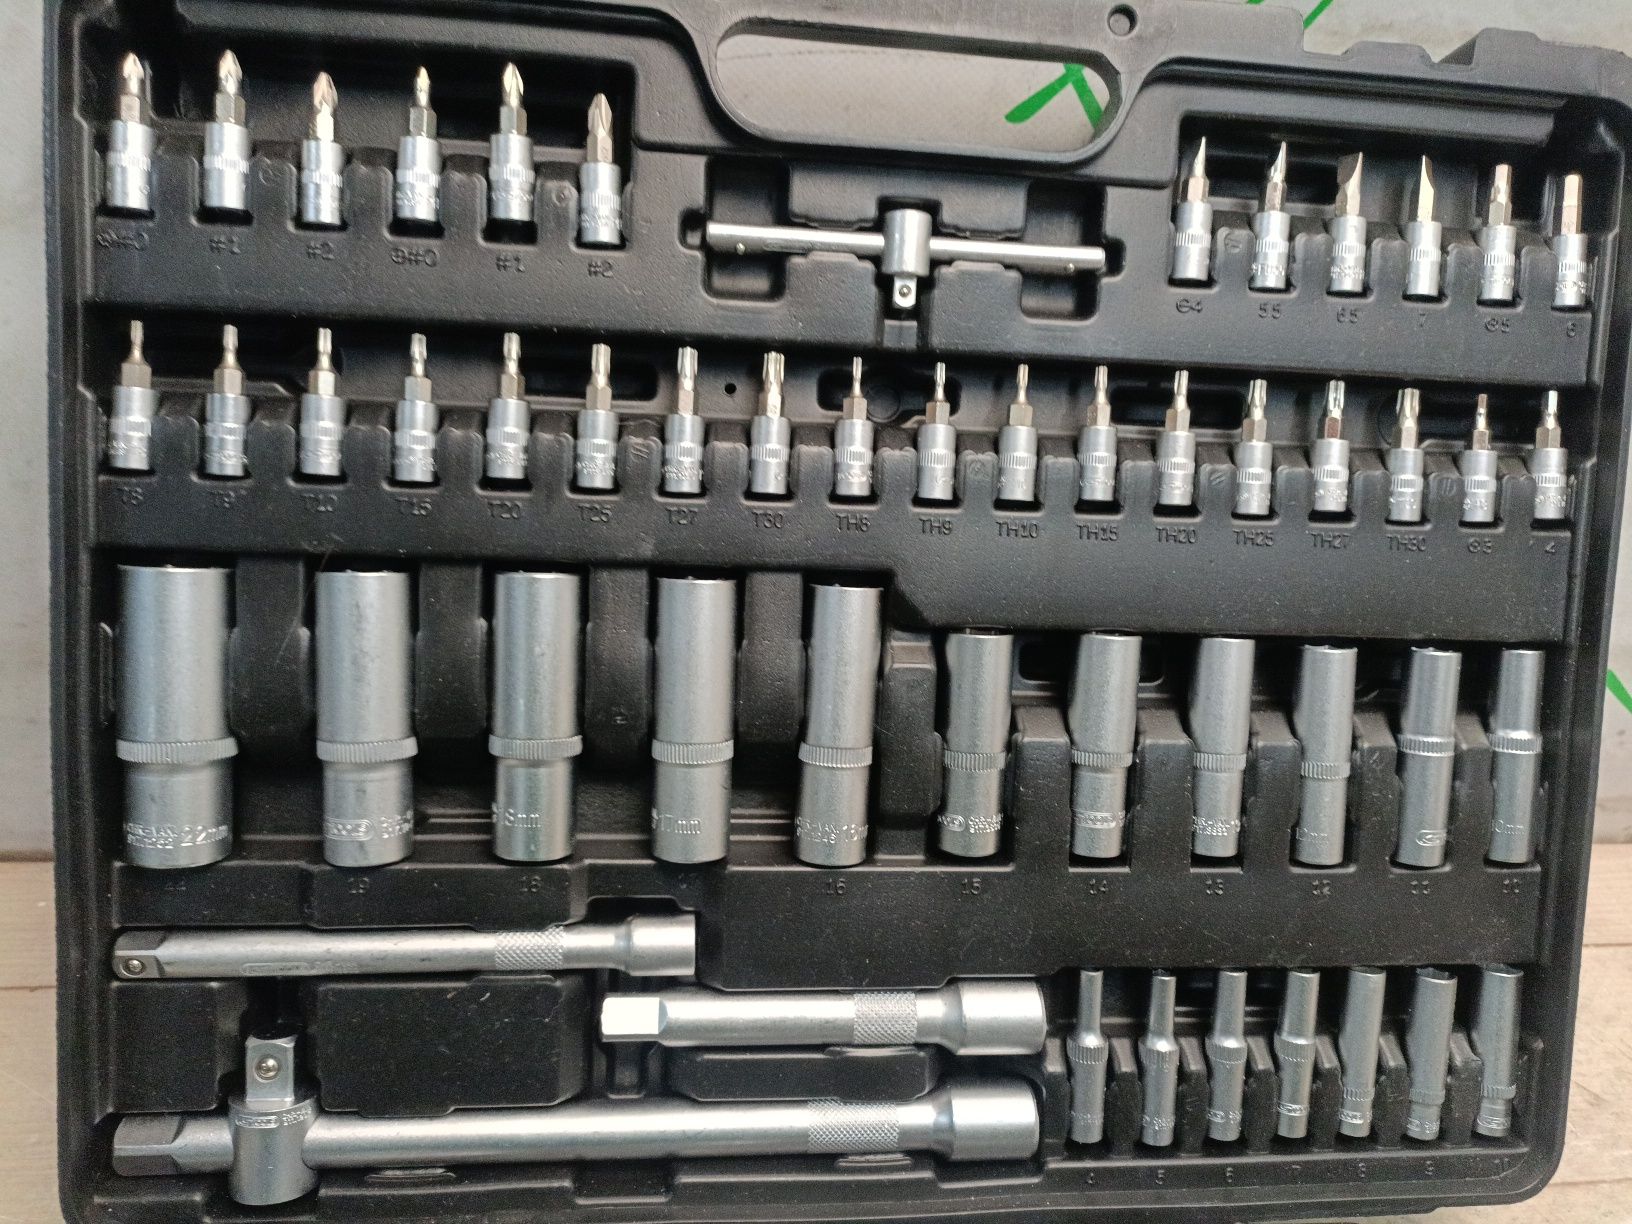 Ks tools 917.0779 набір ключів та головок, оригінал, Німеччина, 195шт